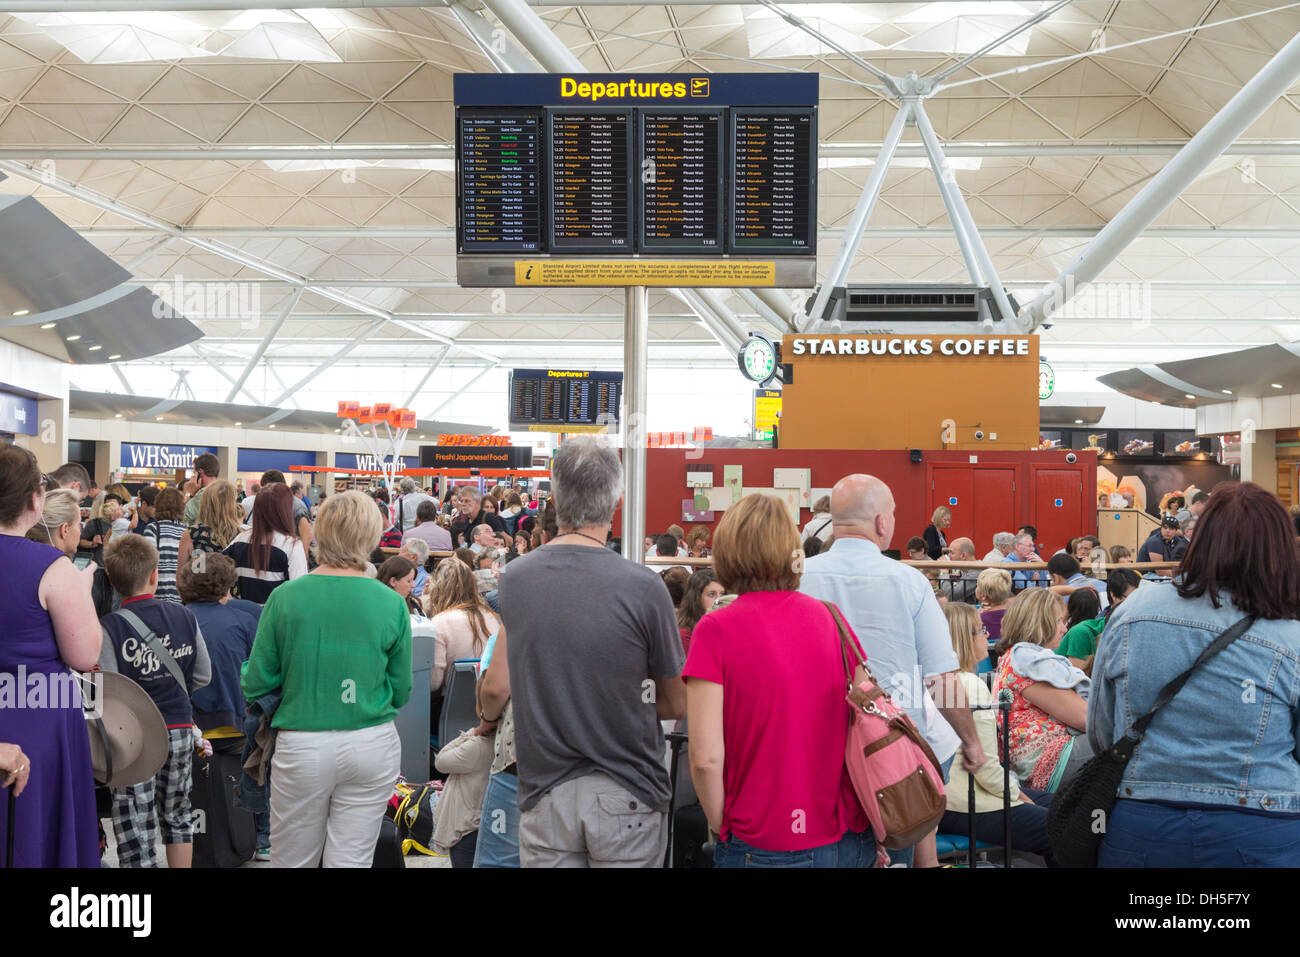 Les gens qui attendent dans le salon des départs de l'aéroport de Stansted, Angleterre, RU Banque D'Images